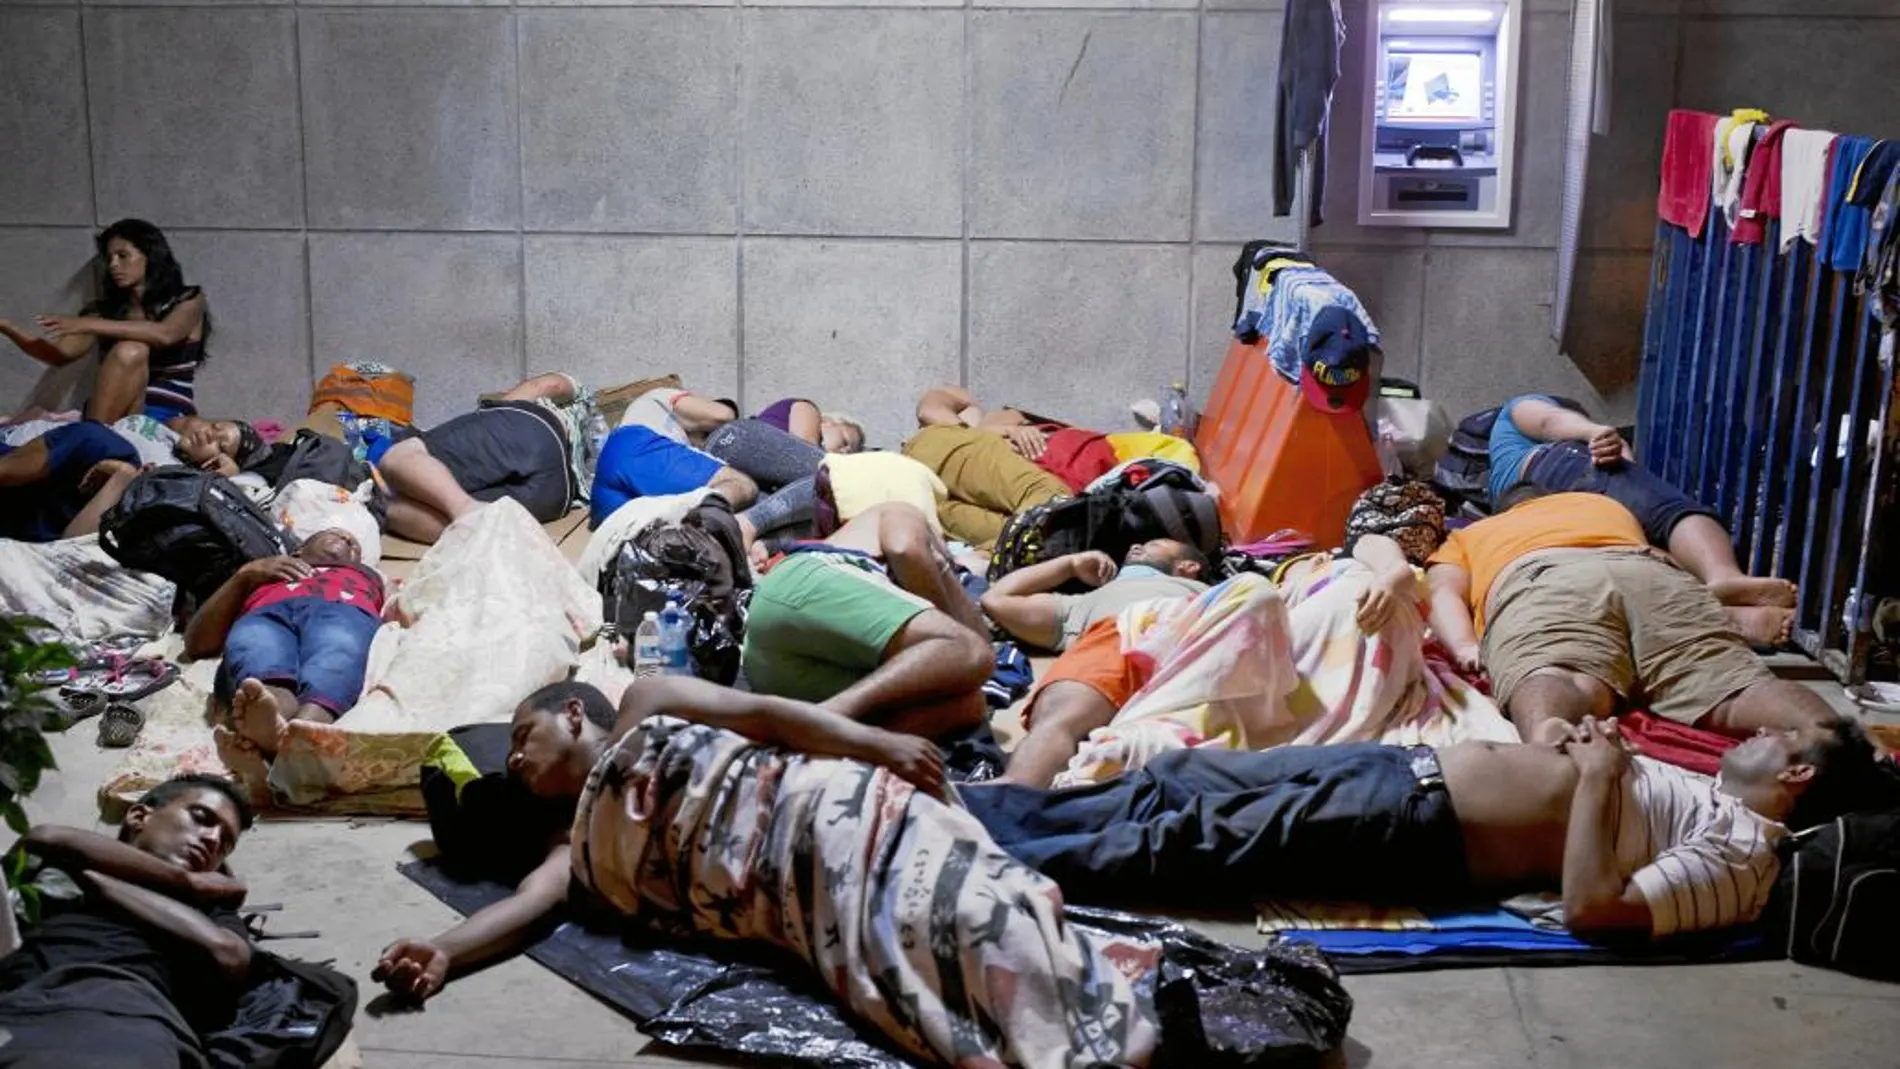 Un grupo de cubanos duerme en un centro fronterizo entre Costa Rica y Nicaragua, país que les bloquea el paso en su viaje hacia EE UU